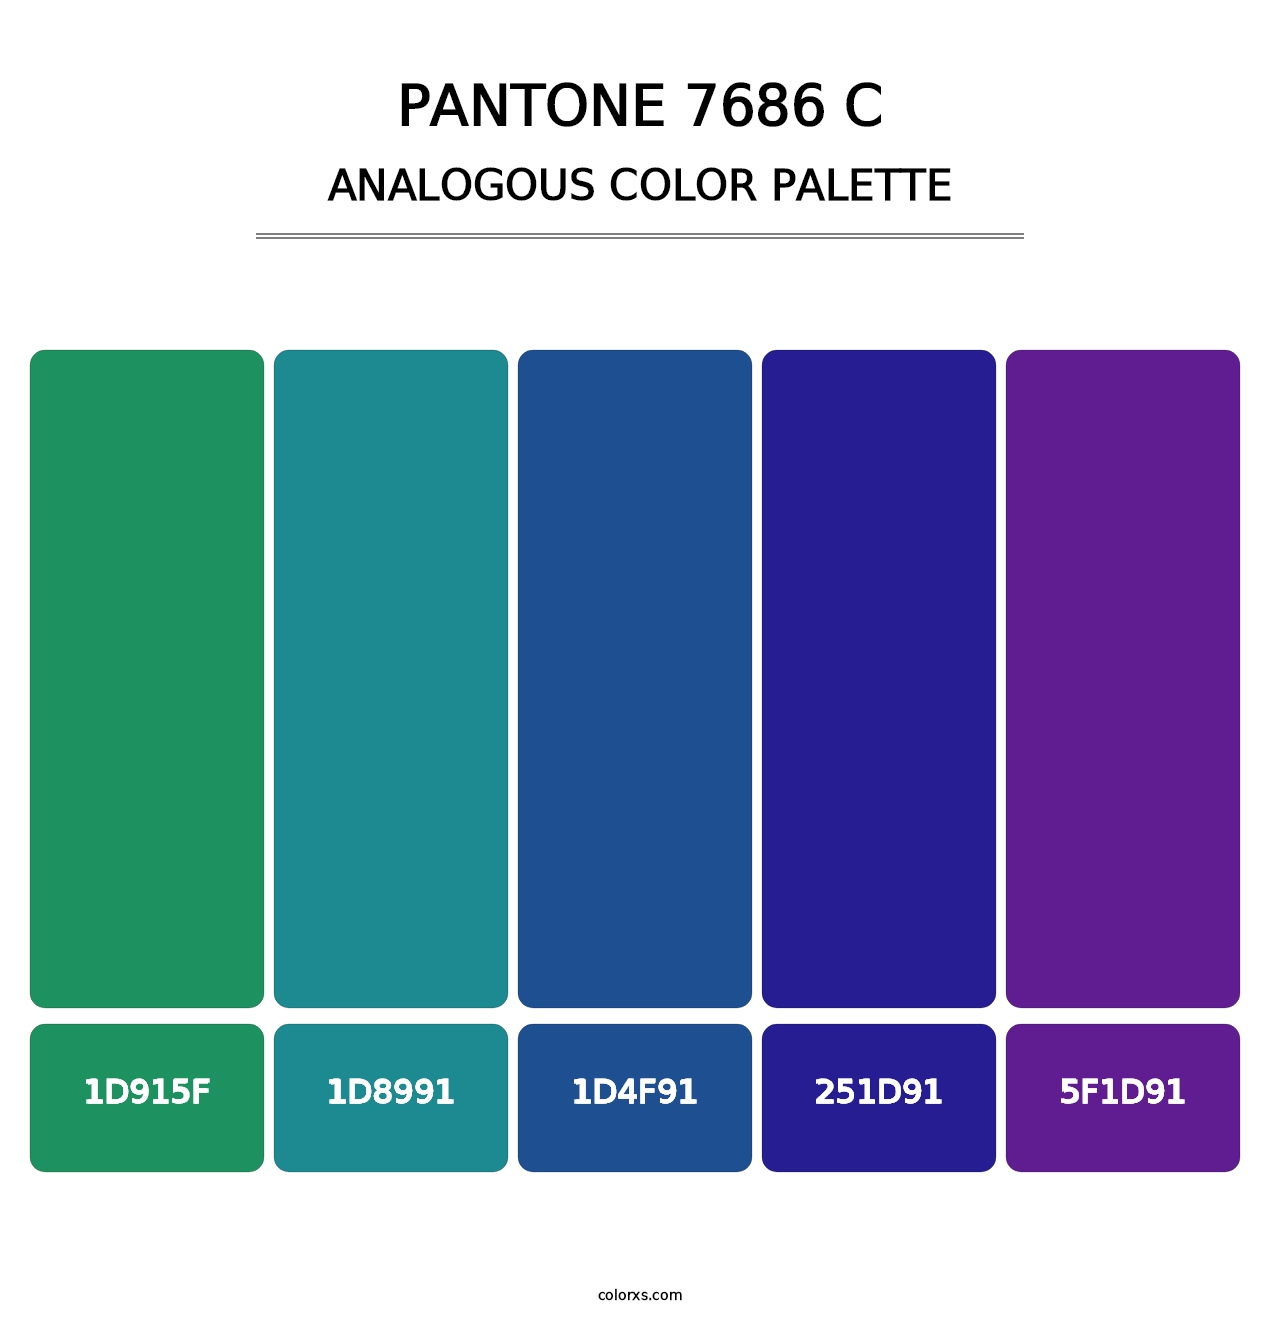 PANTONE 7686 C - Analogous Color Palette